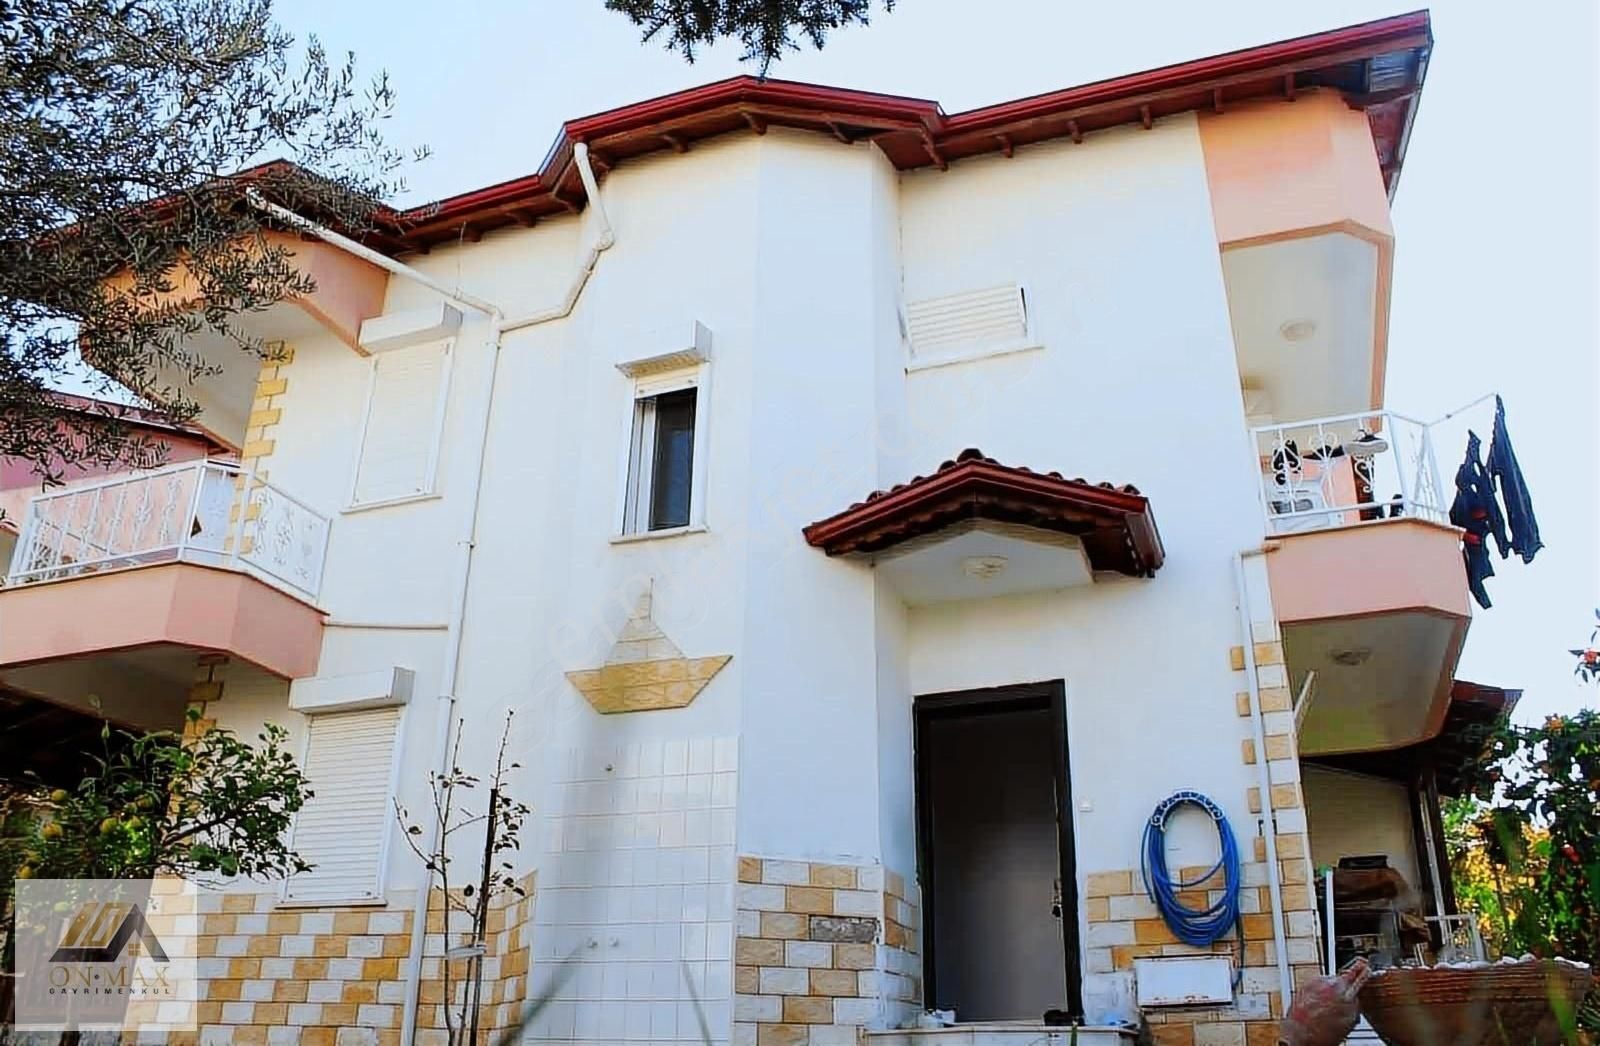 Burhaniye İskele Satılık Villa ON/MAX BURHANİYE İSKELE ADYARDA SATILIK 3+1 DUBLEKS VİLLA